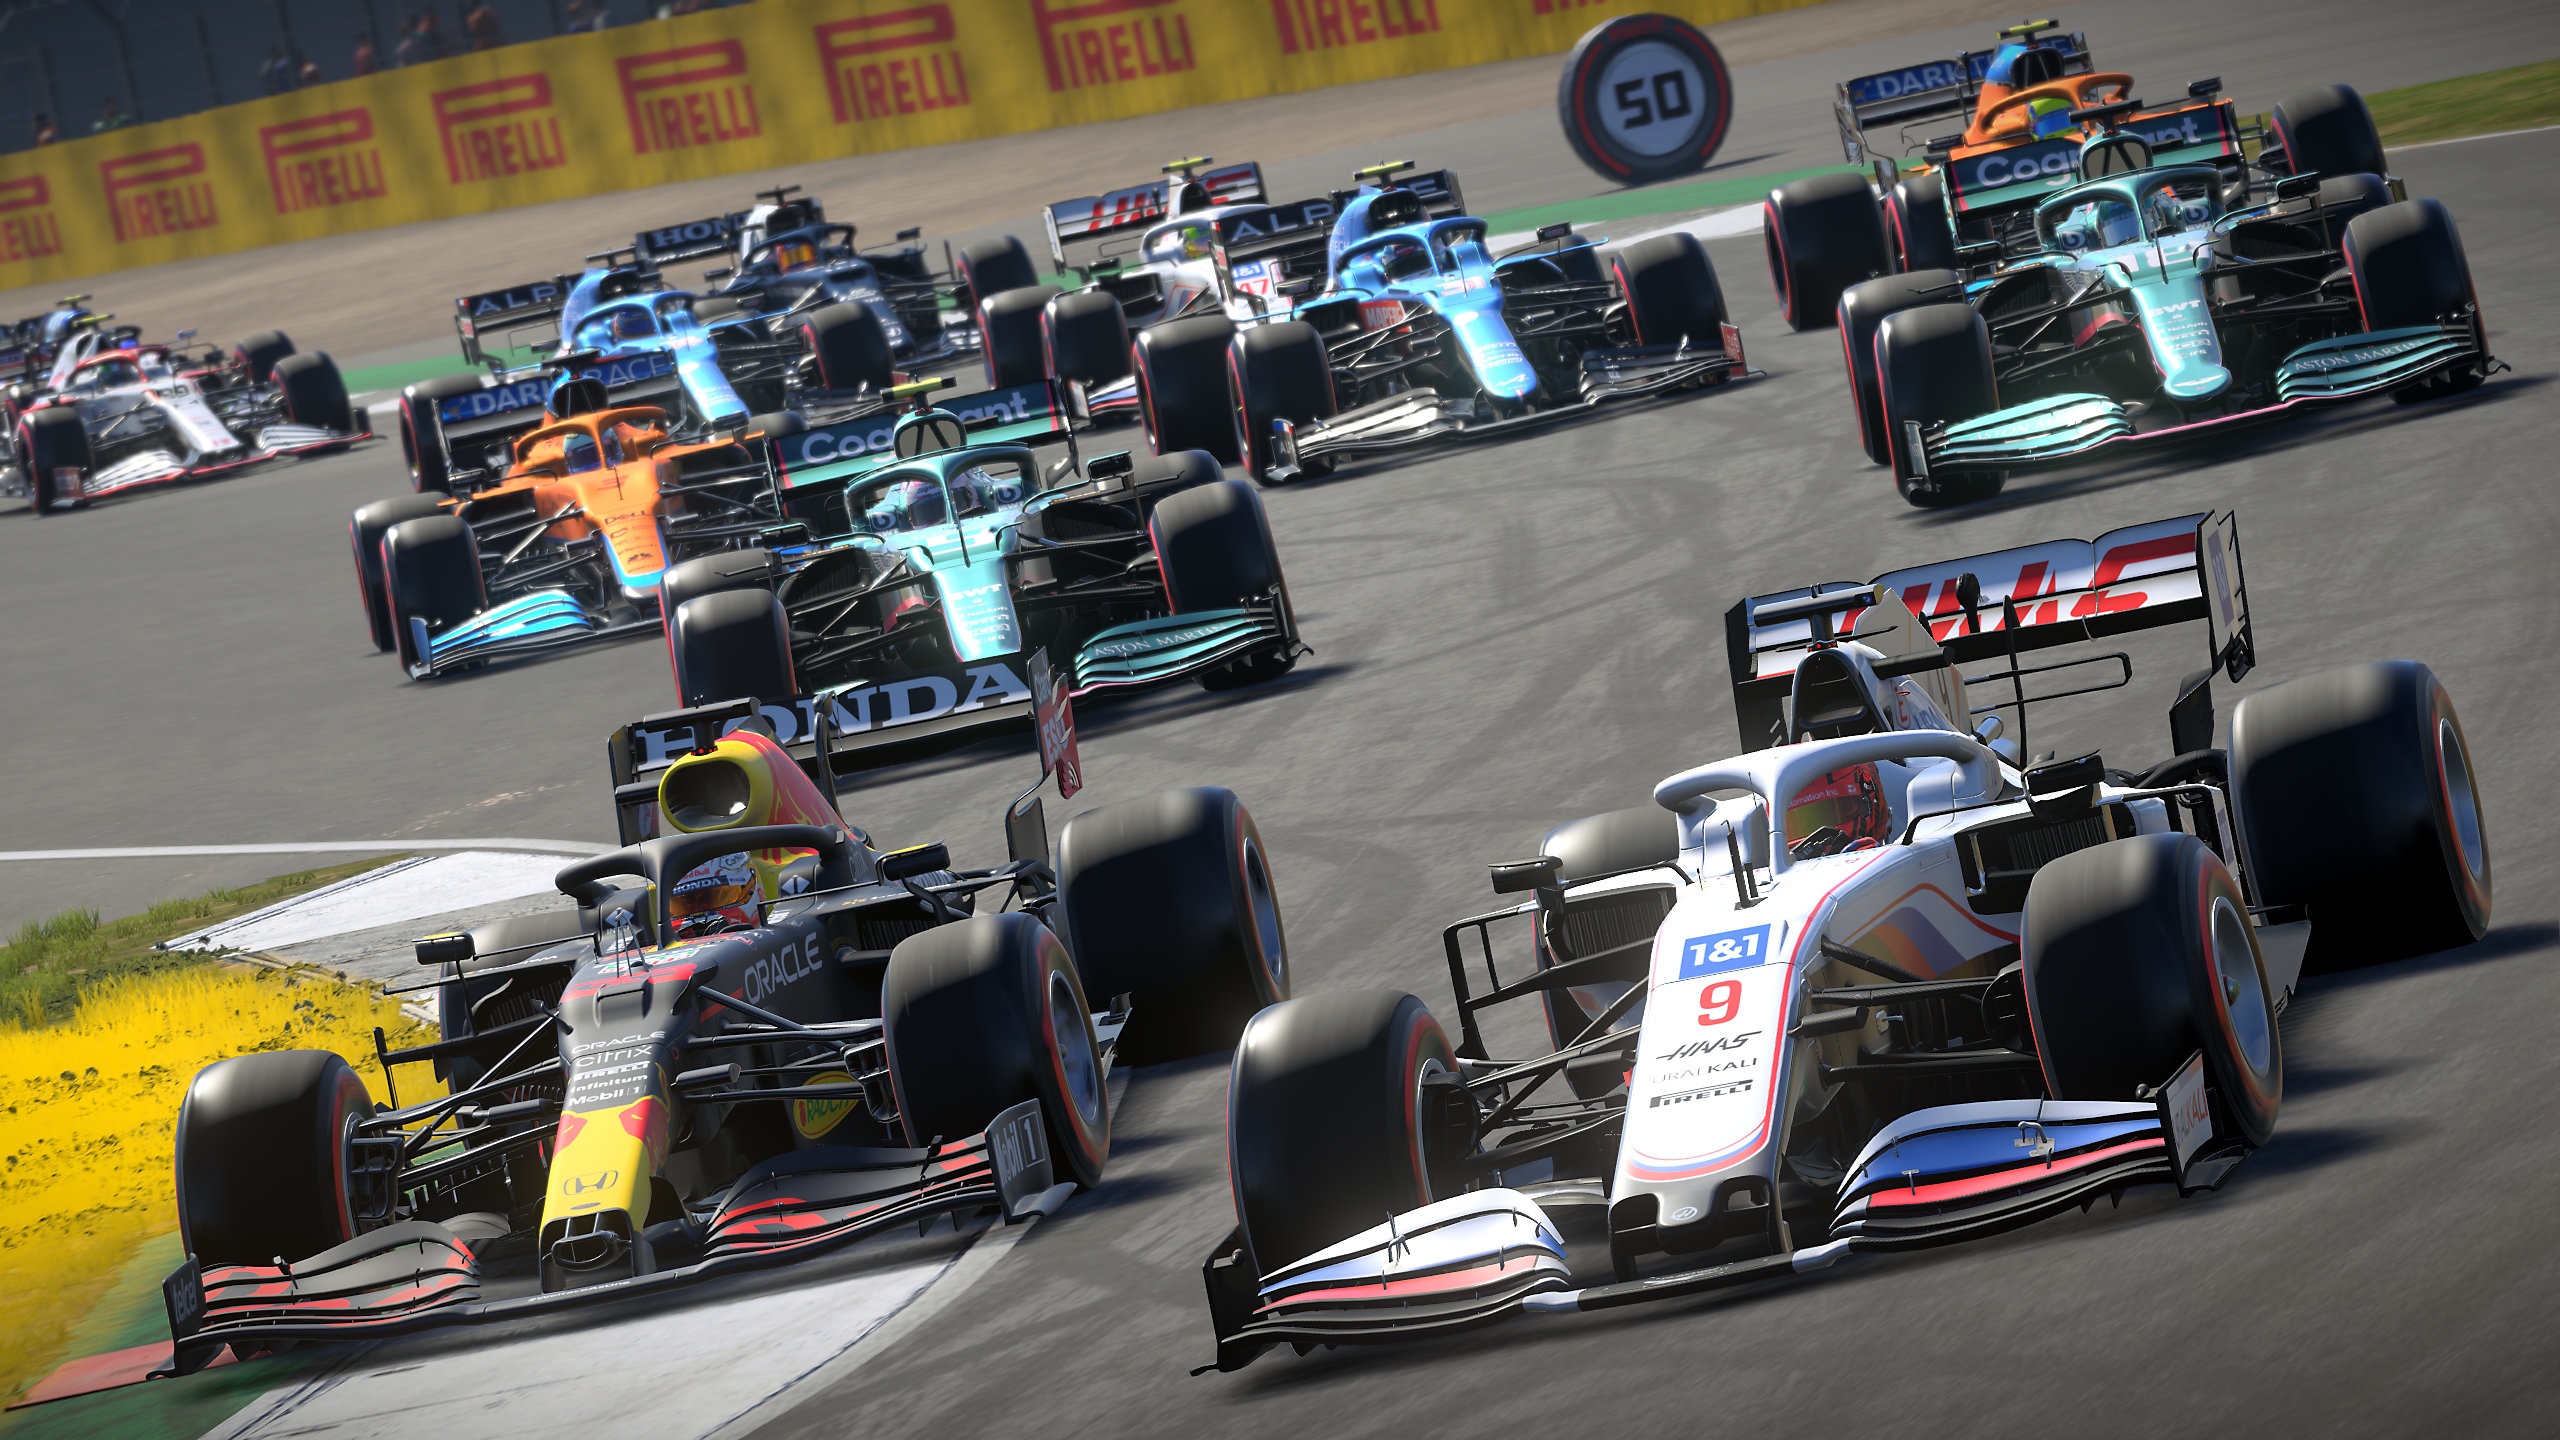 Captura de tela do jogo F1 2021